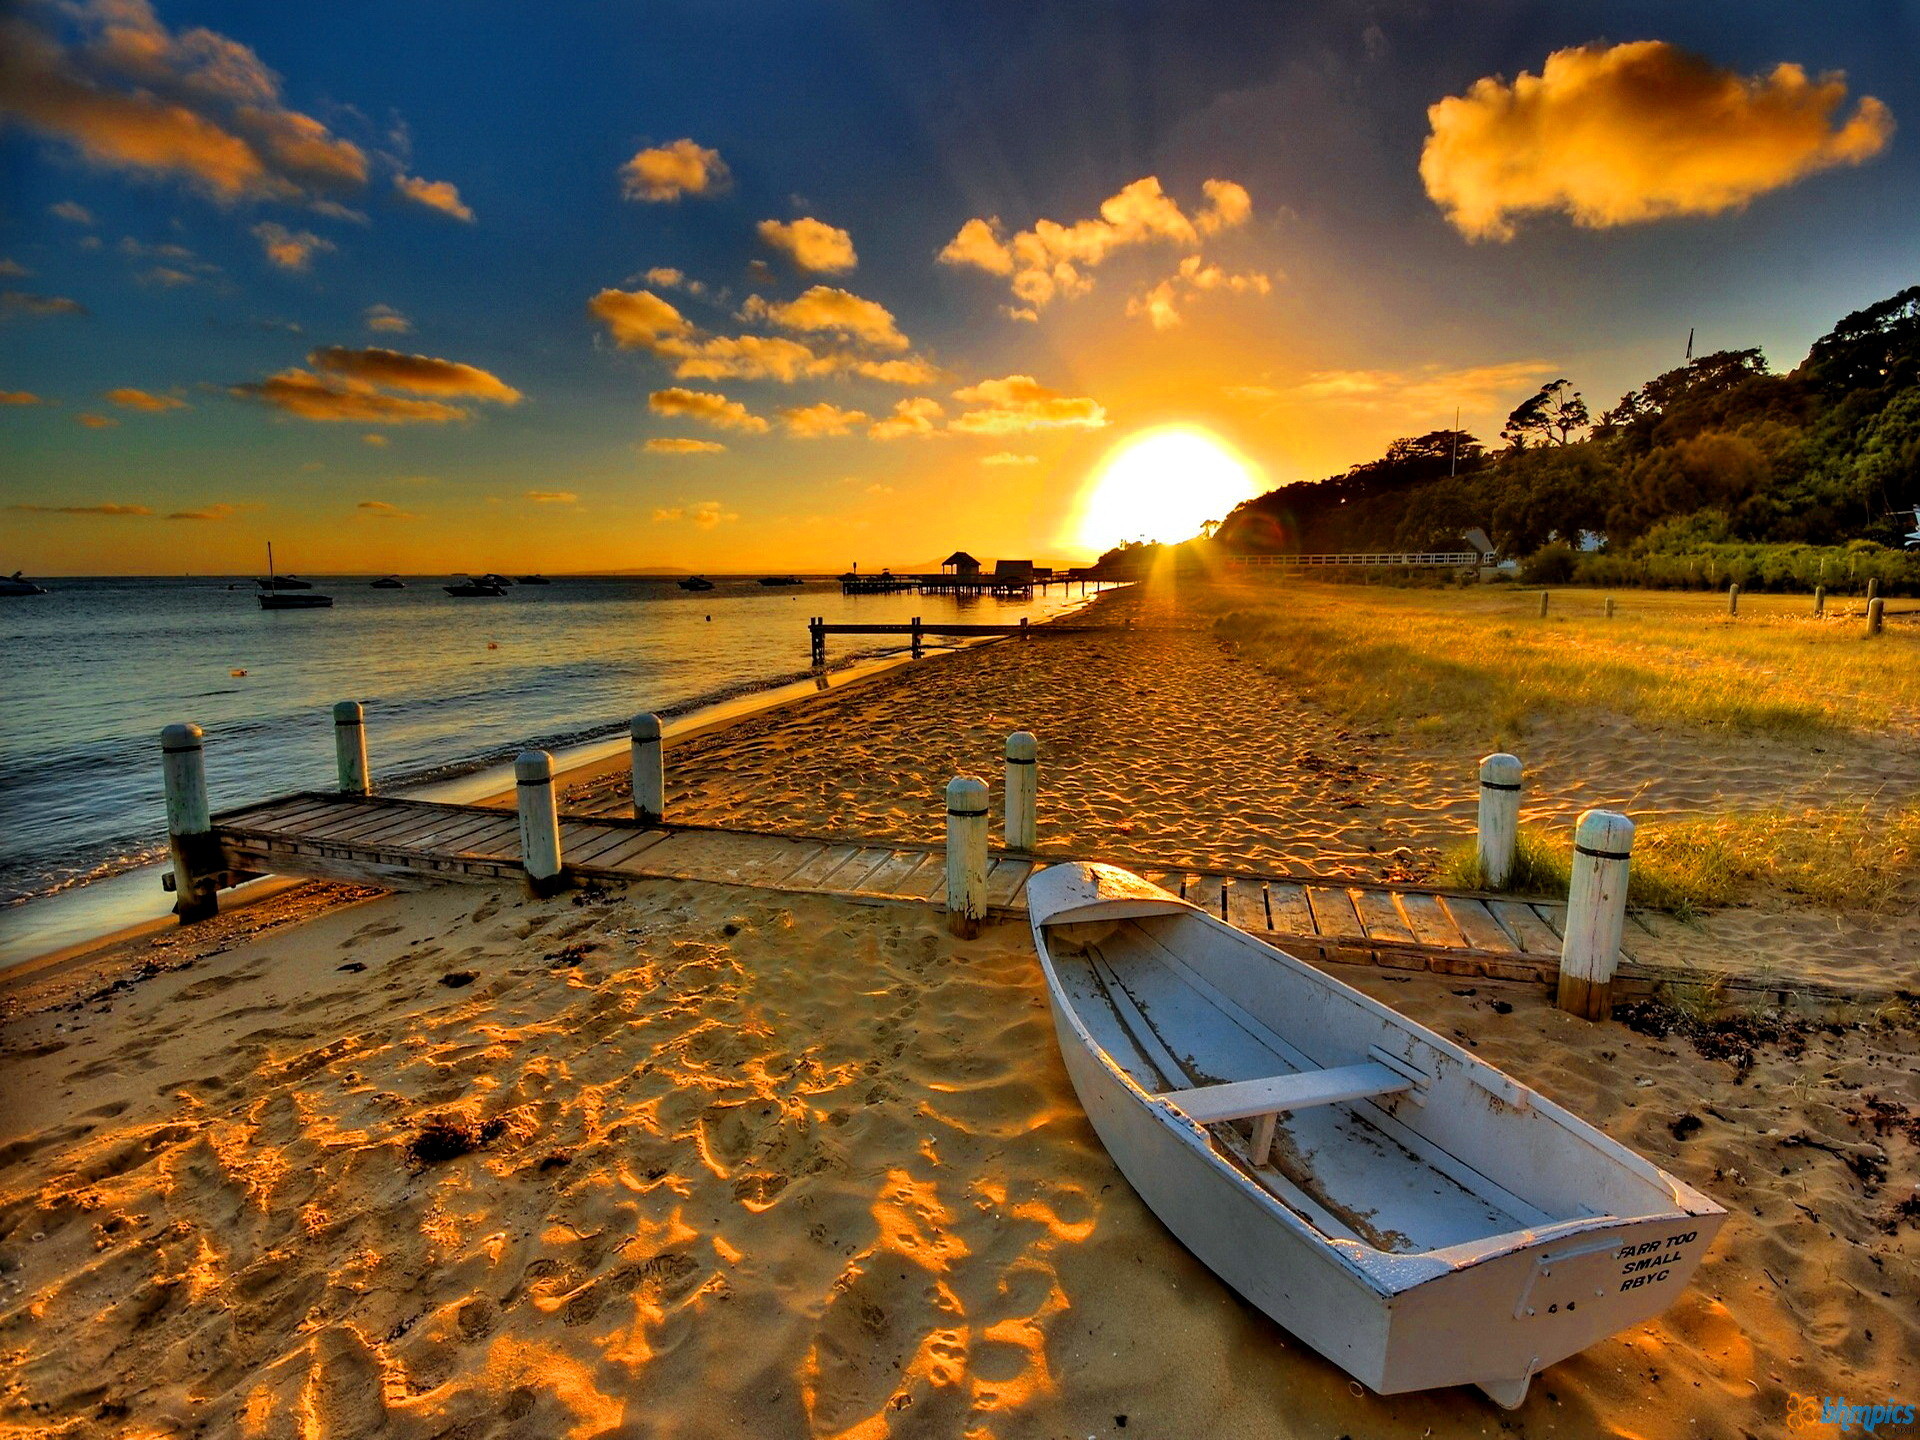 Bãi biển hoàng hôn là một trong những cảnh tượng đẹp nhất của thiên nhiên với sự kết hợp giữa ánh nắng và màu vàng óng ánh của đồi cát. Với hơn 71 bức ảnh nền và hình nền, bạn sẽ dễ dàng chọn cho mình một bức ảnh ưng ý để trang trí cho máy tính hay thiết bị di động.